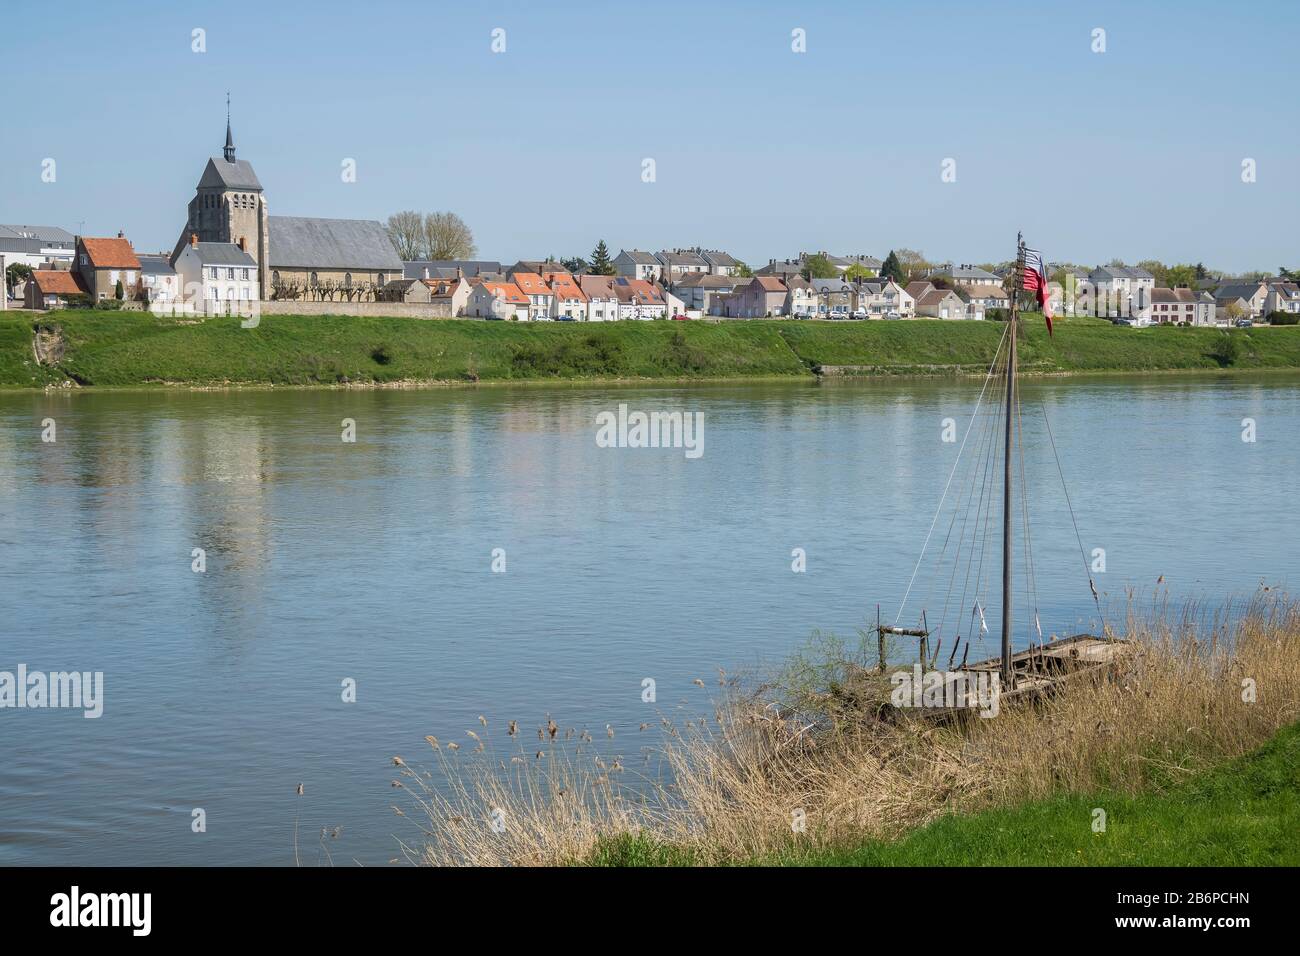 Saint Denis de L´Hotel village in Loiret department, France Stock Photo